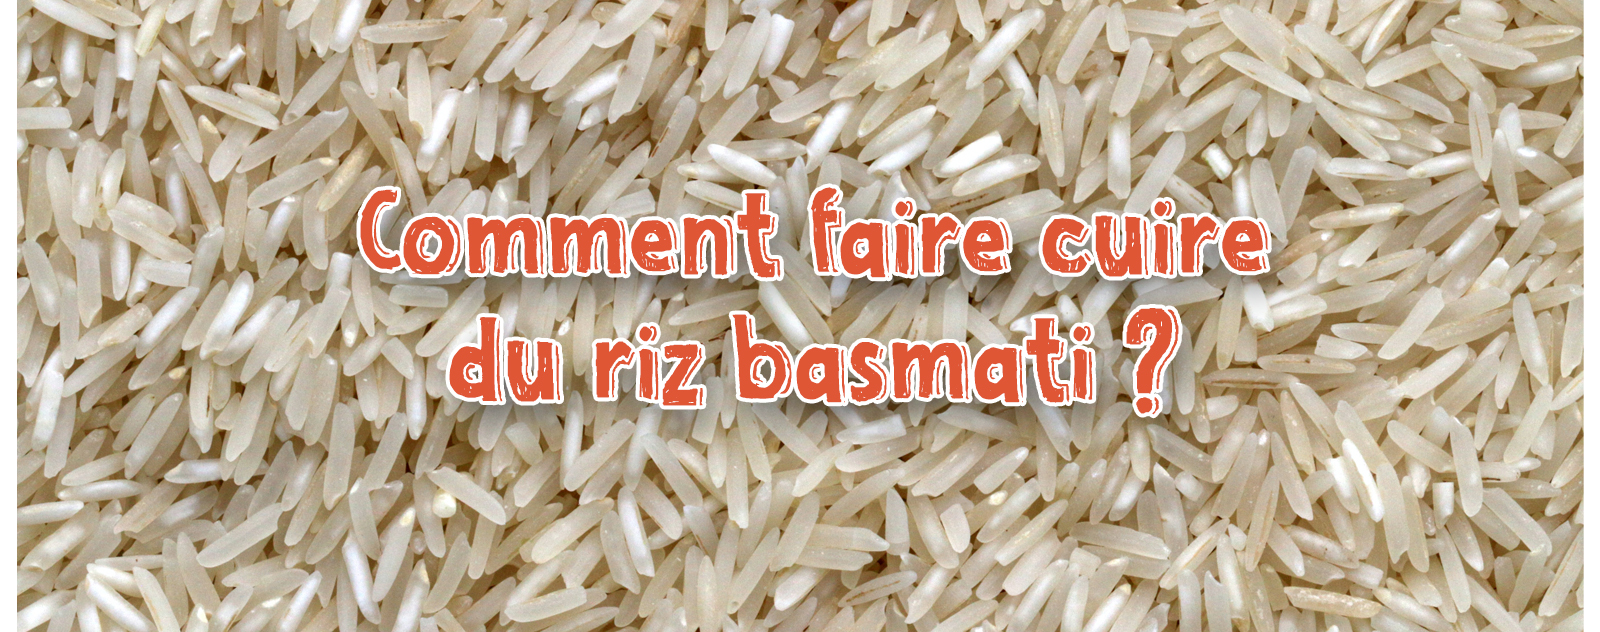 Comment cuire parfaitement le riz basmati : 2 méthodes + conseils